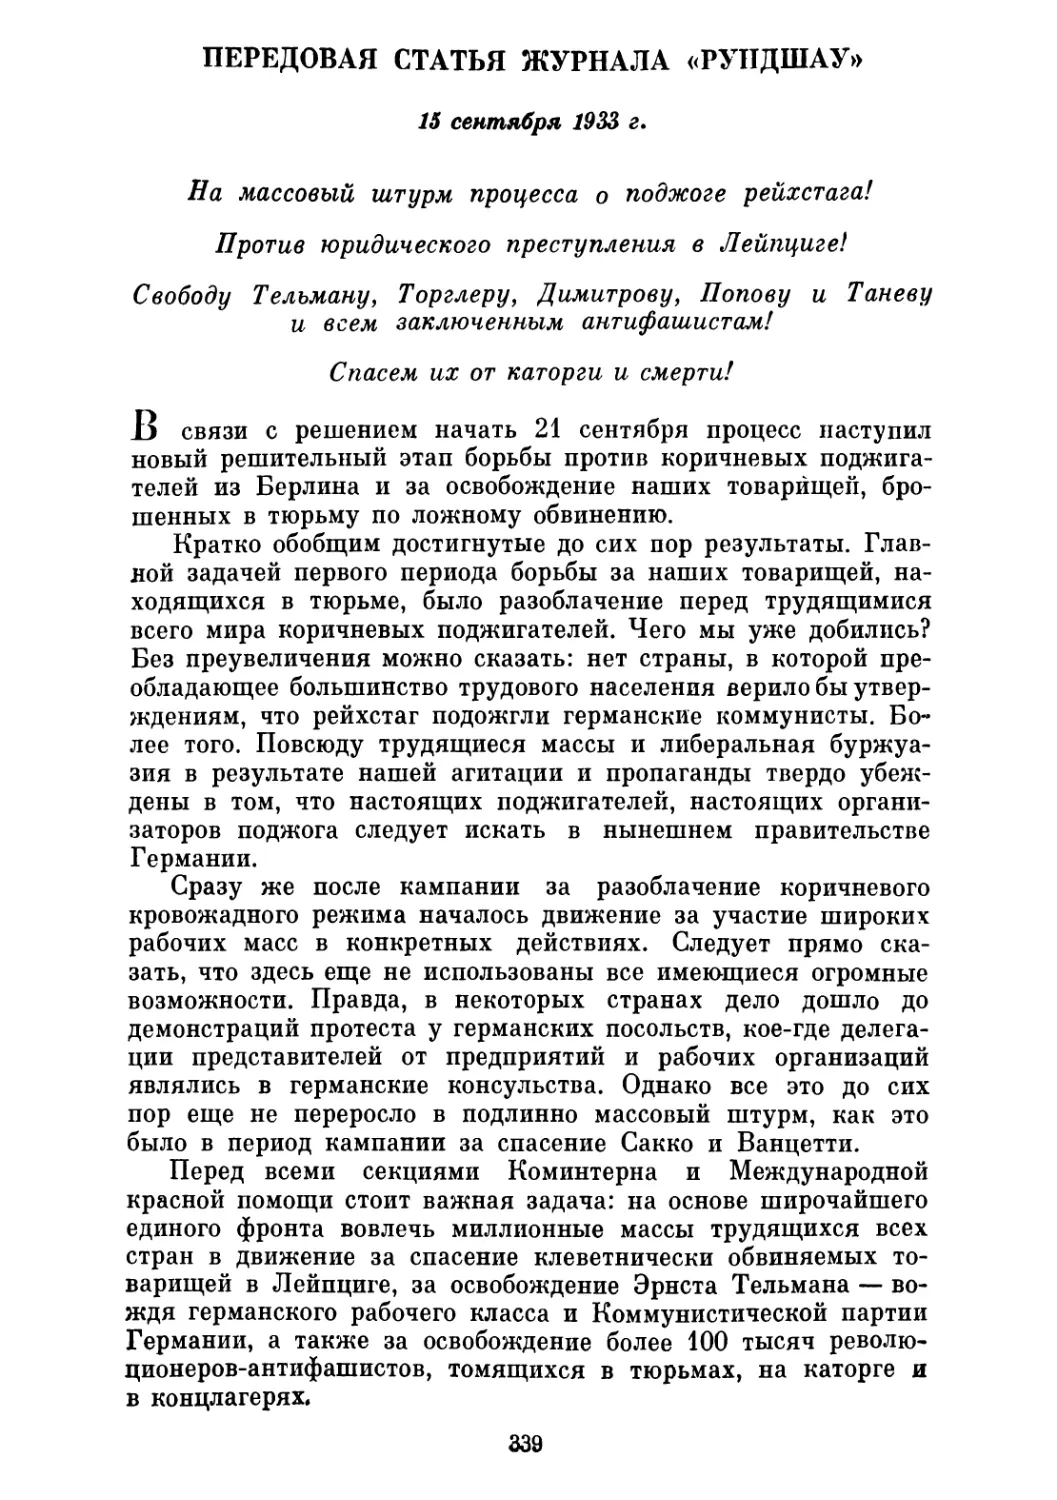 ПЕРЕДОВАЯ СТАТЬЯ ЖУРНАЛА «РУНДШАУ». 15 сентября 1933 г.